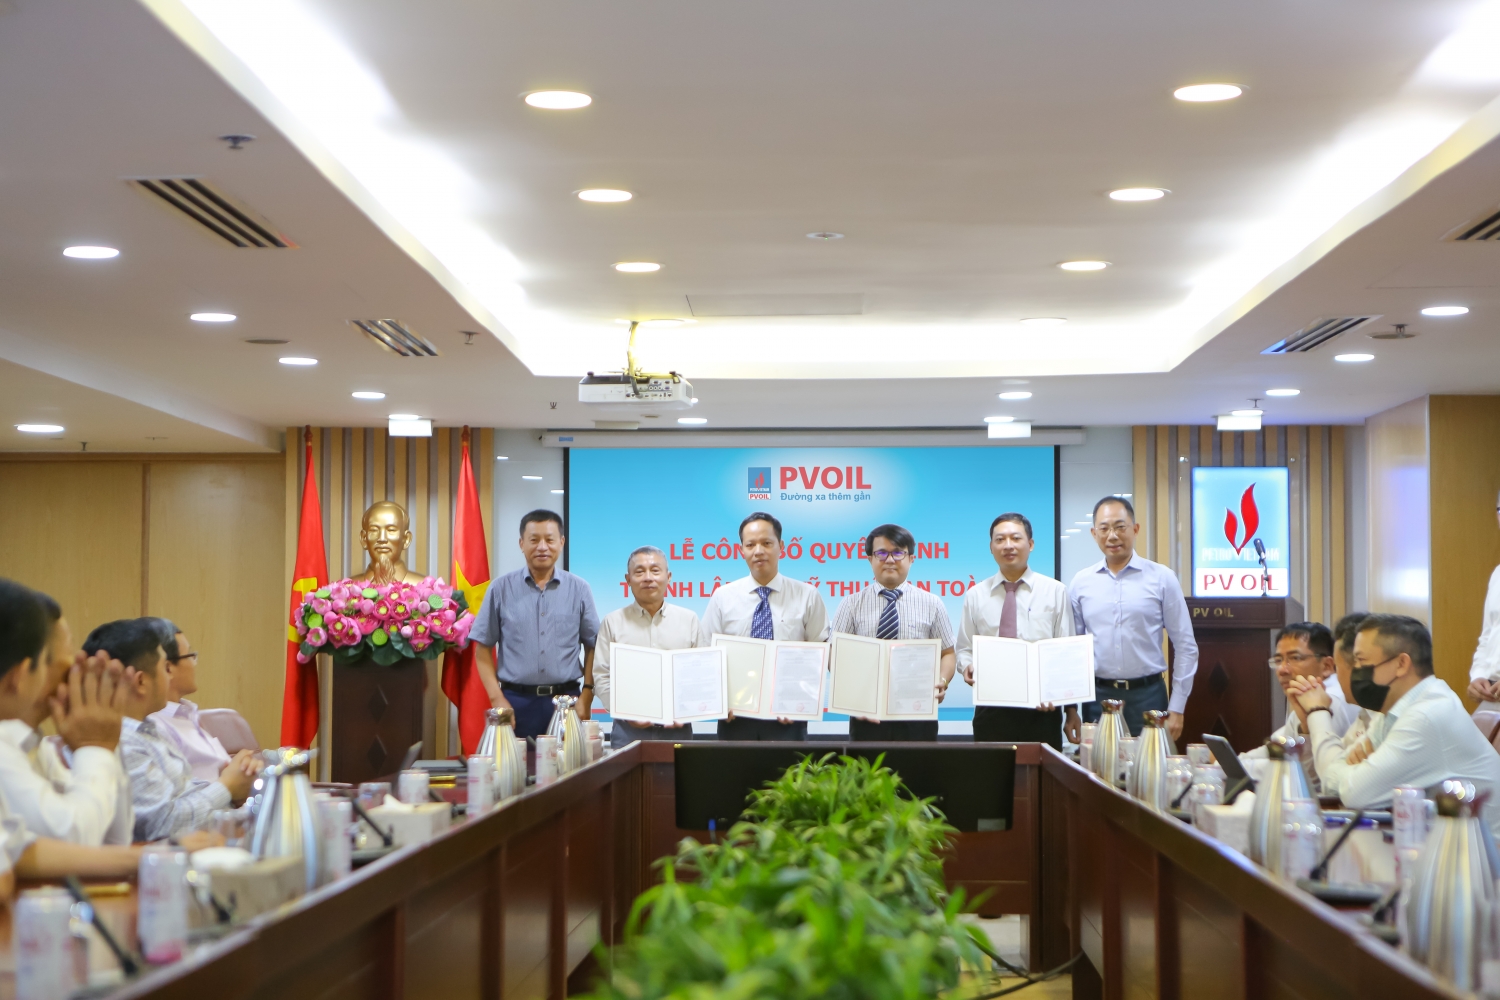 Ông Cao Hoài Dương – Bí thư Đảng ủy, Chủ tịch HĐQT (bên phải) và ông Đoàn Văn Nhuộm – Tổng Giám đốc Tổng công ty (bên trái) trao Quyết định thành lập Ban Kỹ thuật An toàn và các Quyết định giao nhiệm vụ, bổ nhiệm cán bộ